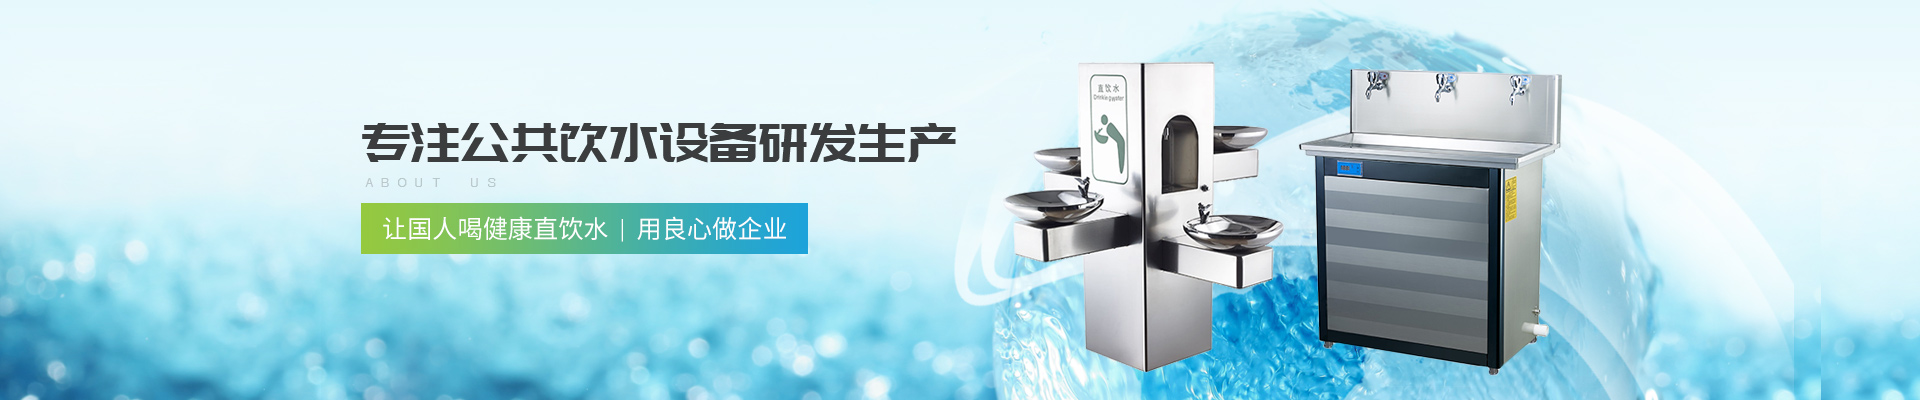 深圳圣蓝-专注公共饮水设备研发生产